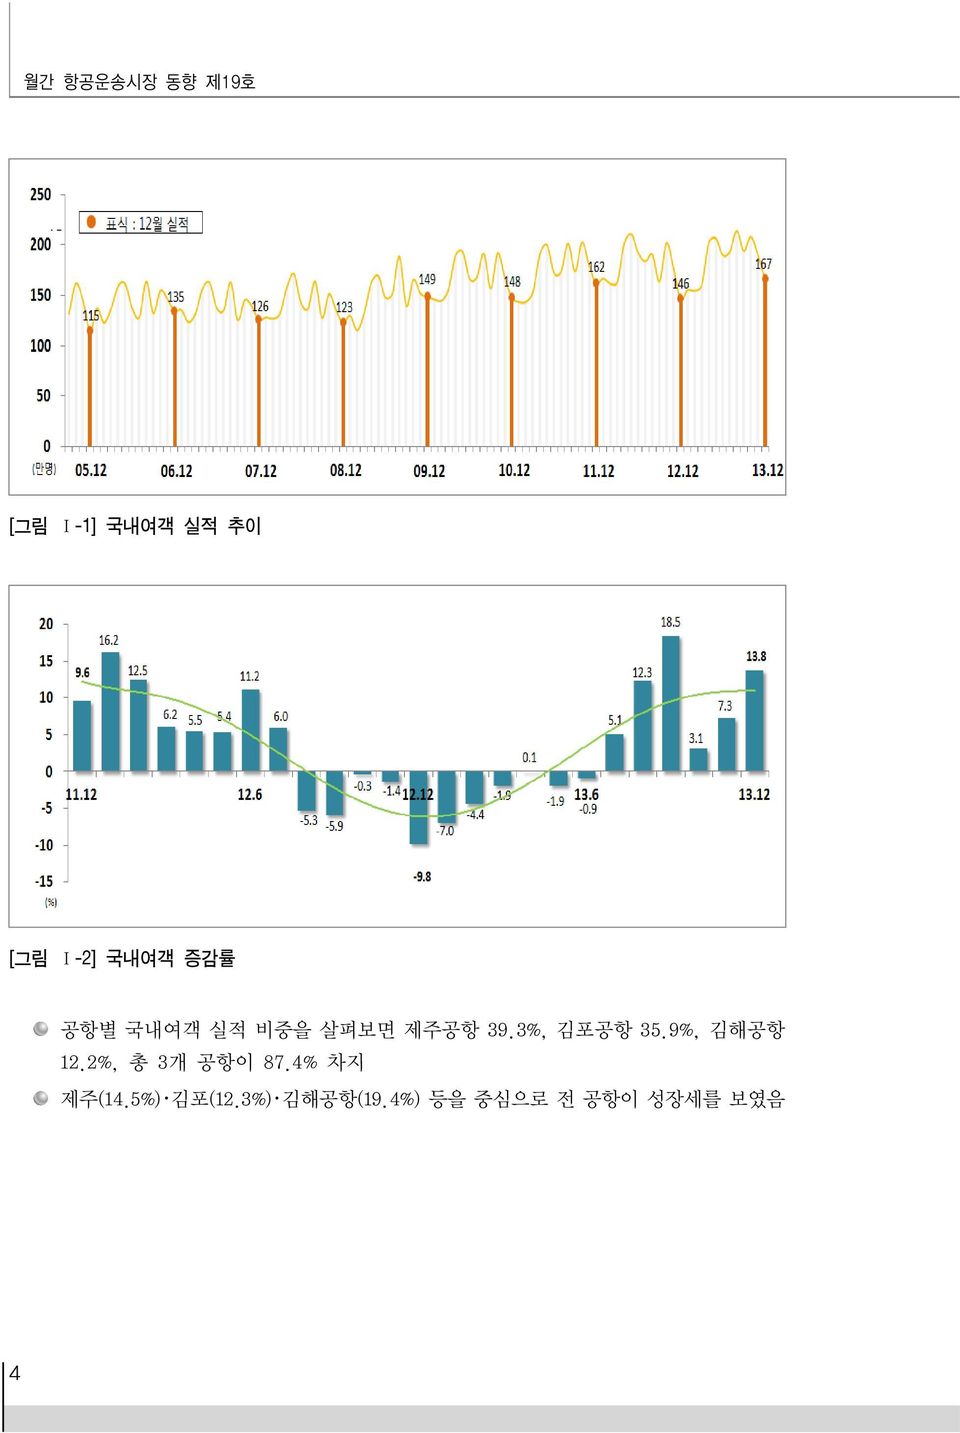 3%, 김포공항 35.9%, 김해공항 12.2%, 총 3개 공항이 87.